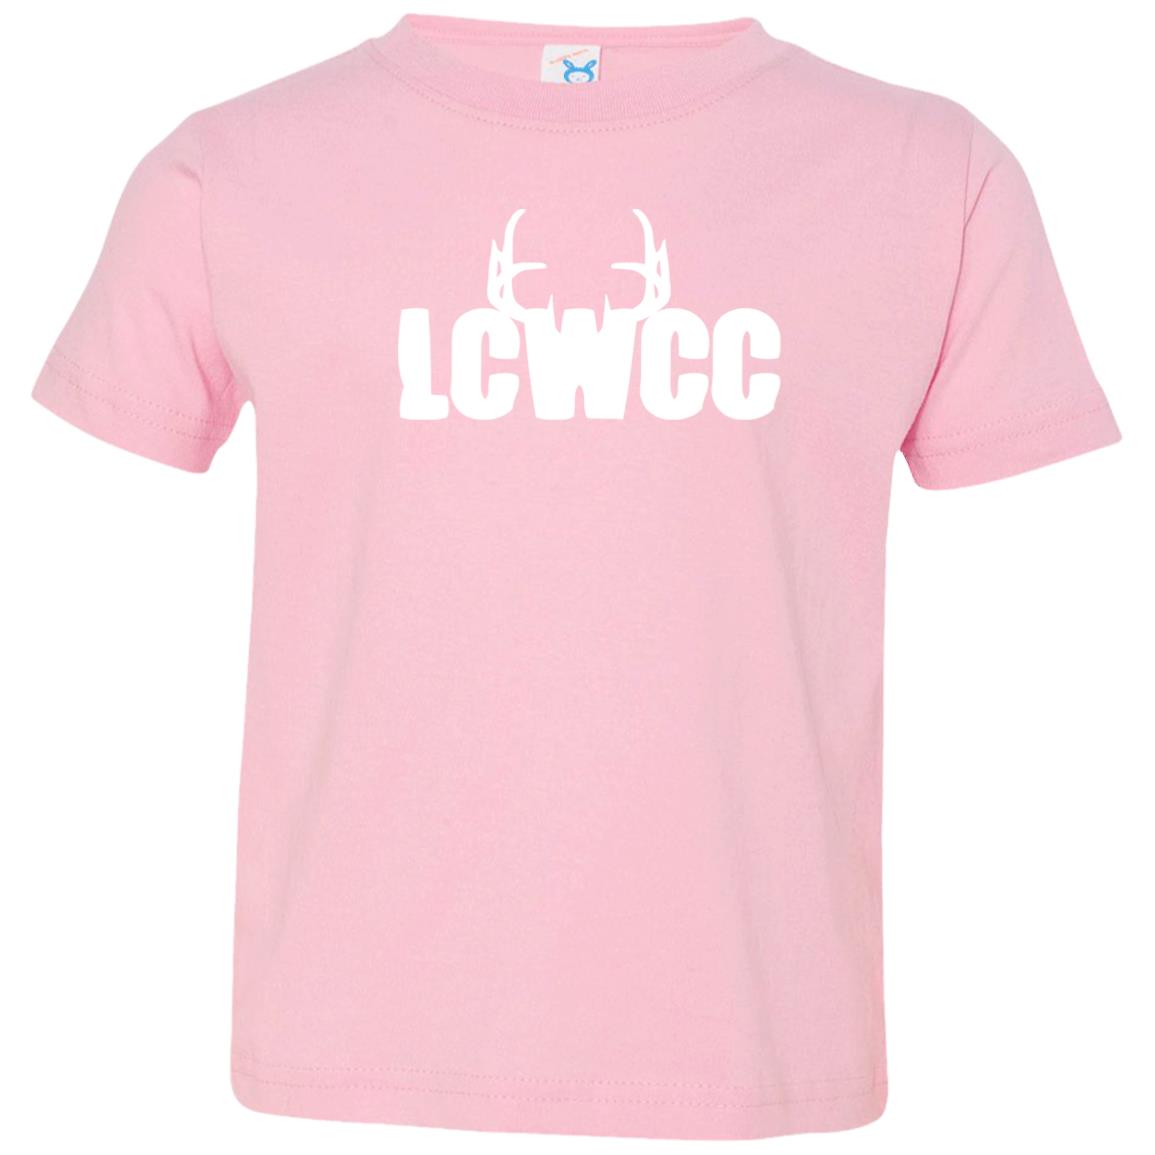 LCWCC Rack Logo - White 3321 Toddler Jersey T-Shirt